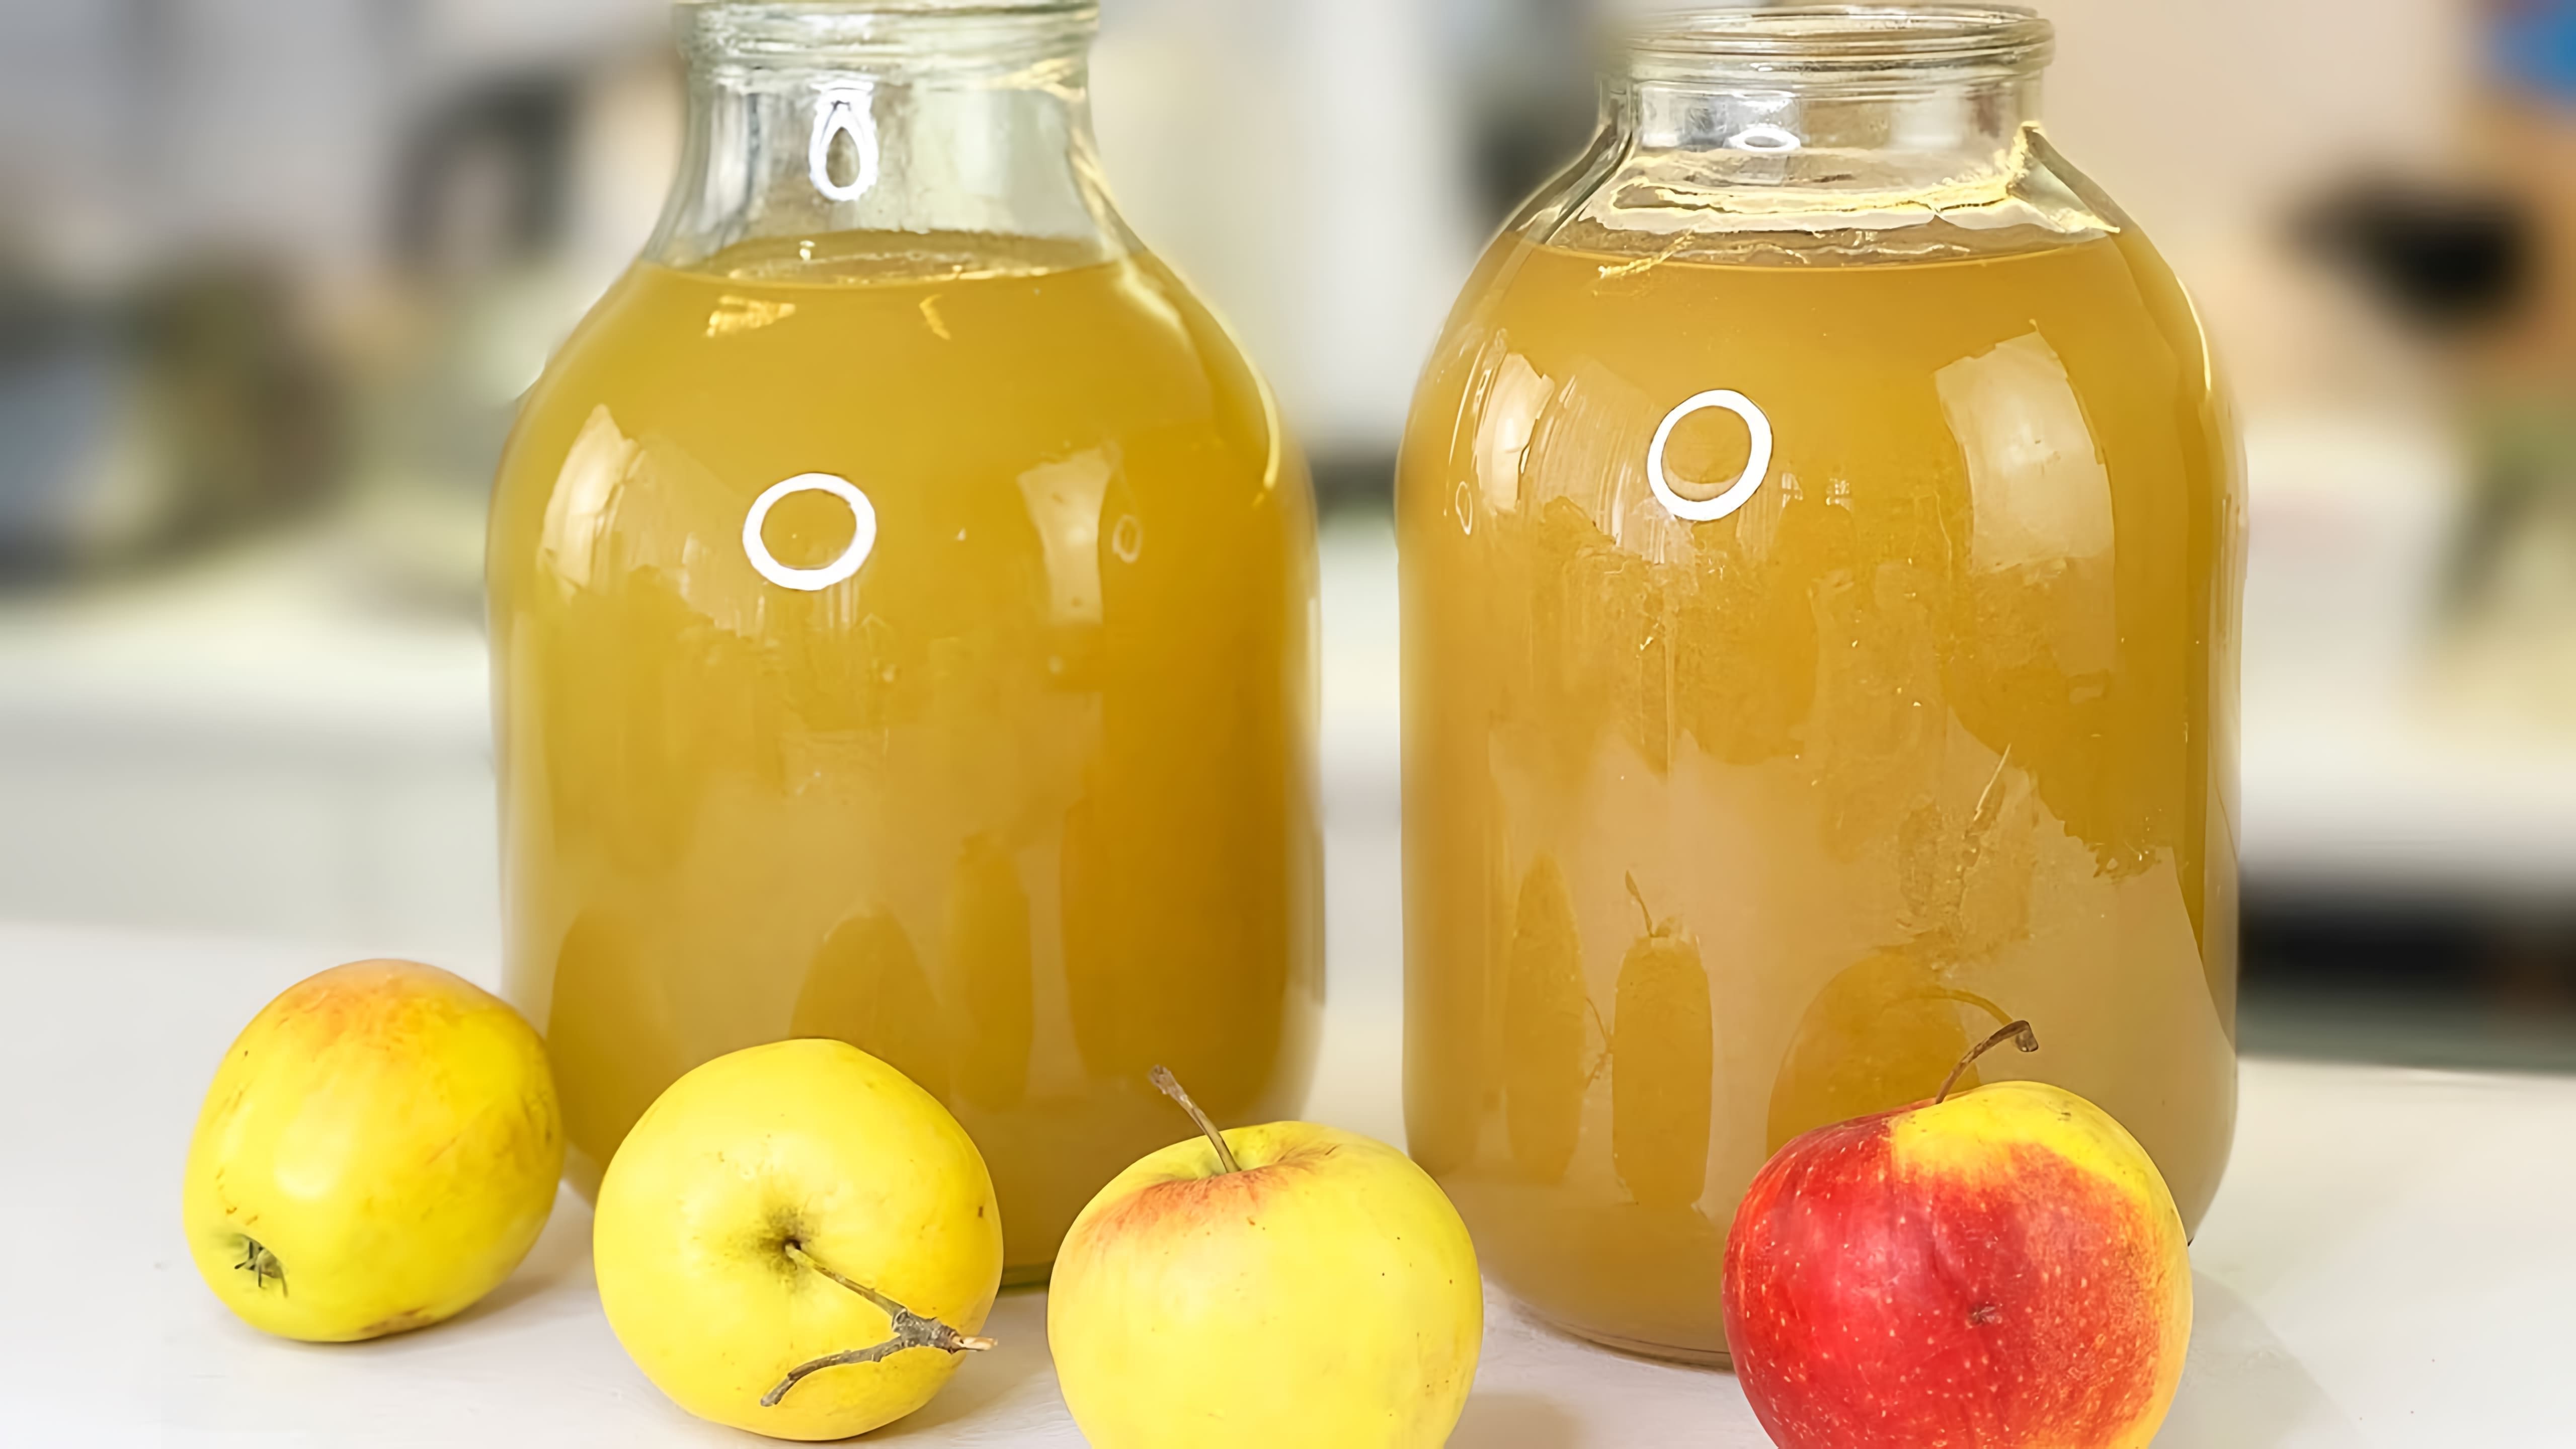 В этом видео демонстрируется процесс приготовления натурального яблочного сока в домашних условиях